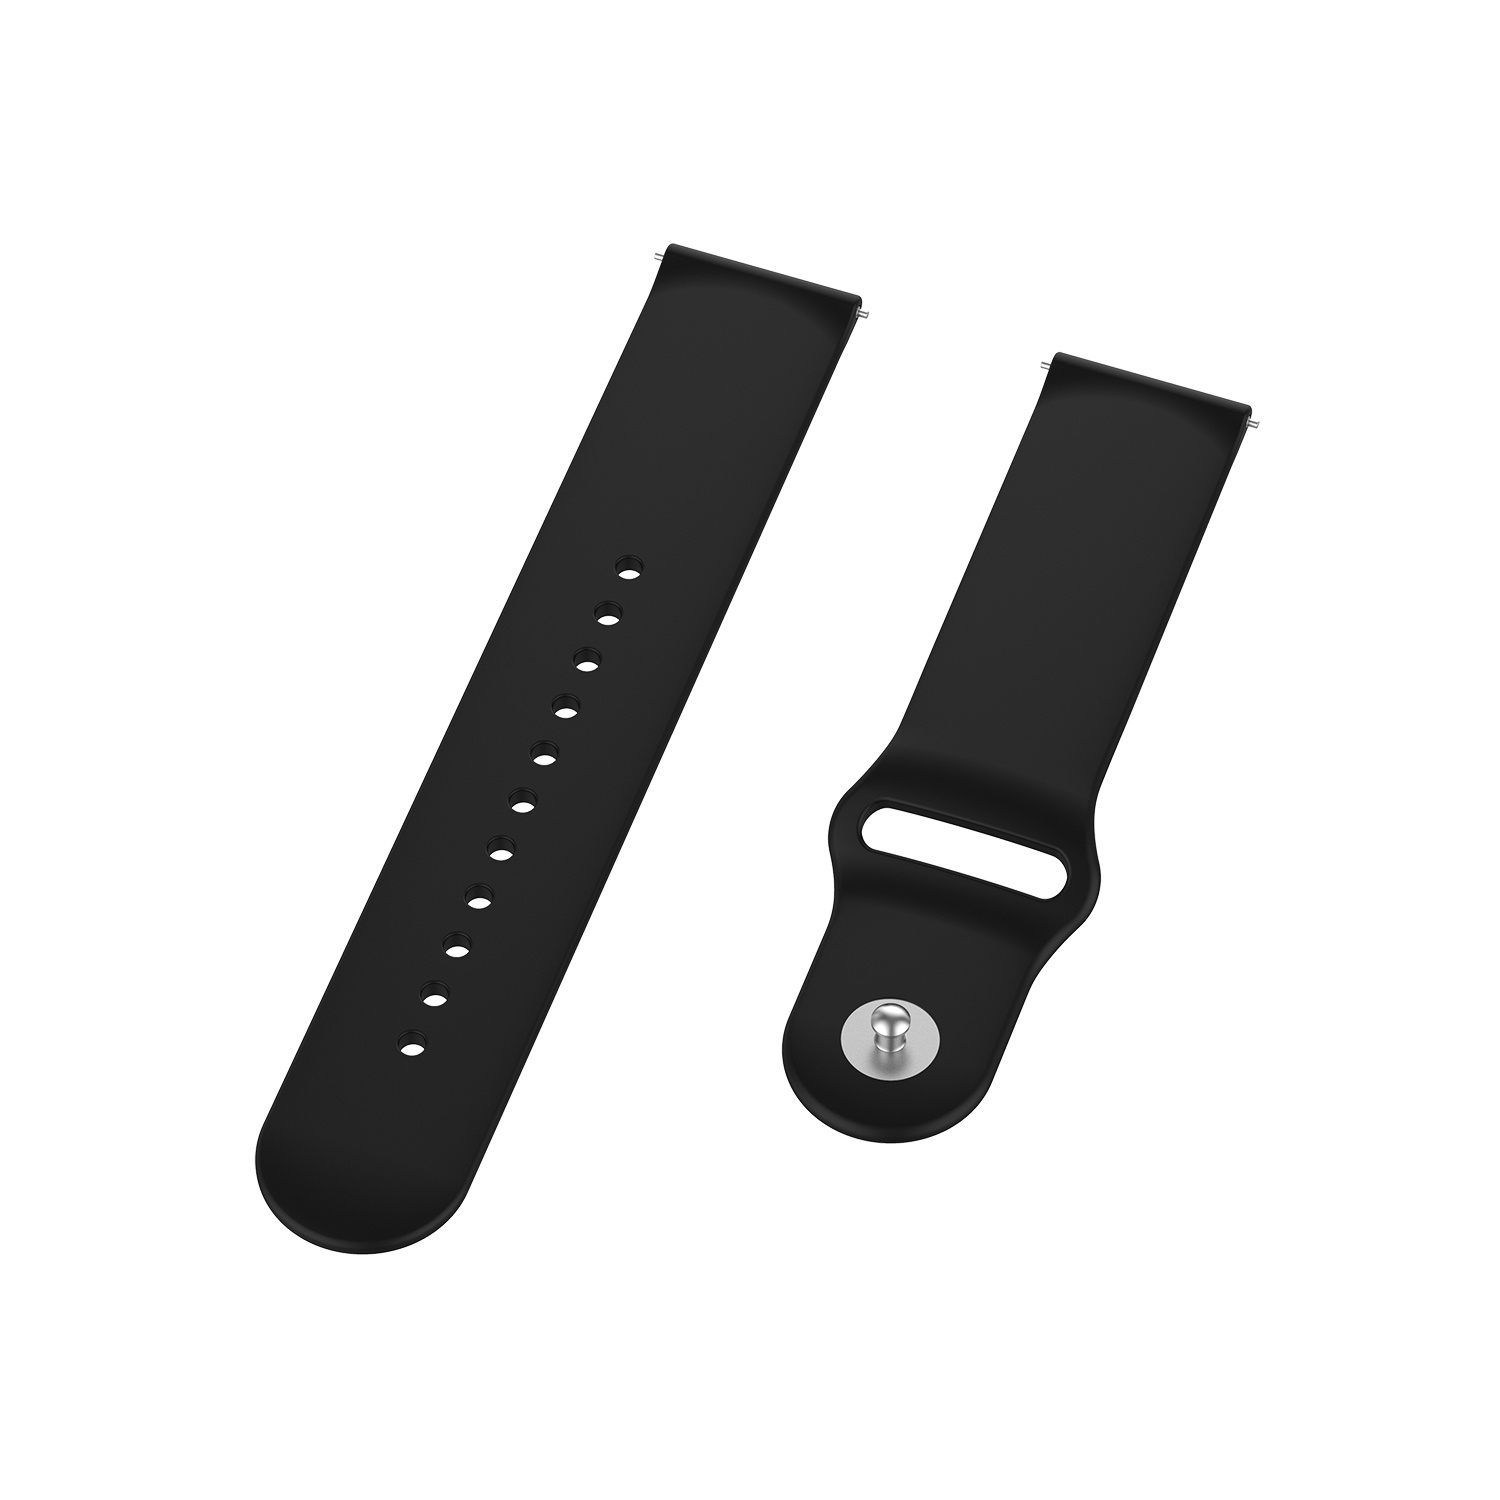 Bracelet sport en silicone Huawei Watch GT - noir